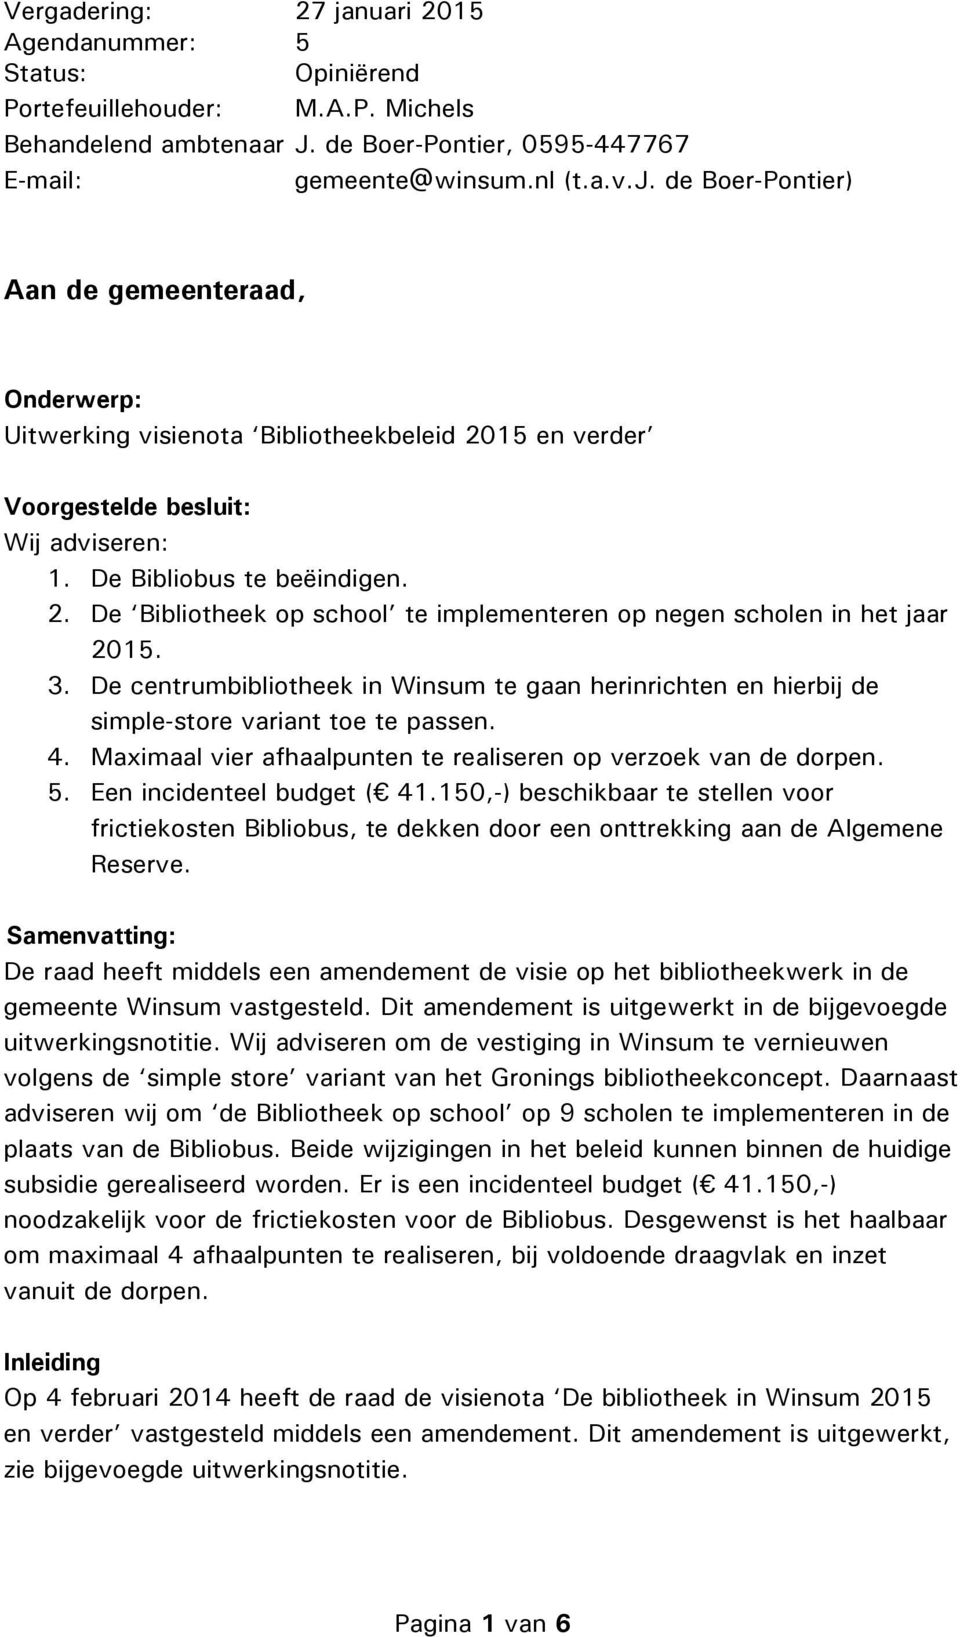 De centrumbibliotheek in Winsum te gaan herinrichten en hierbij de simple-store variant toe te passen. 4. Maximaal vier afhaalpunten te realiseren op verzoek van de dorpen. 5.